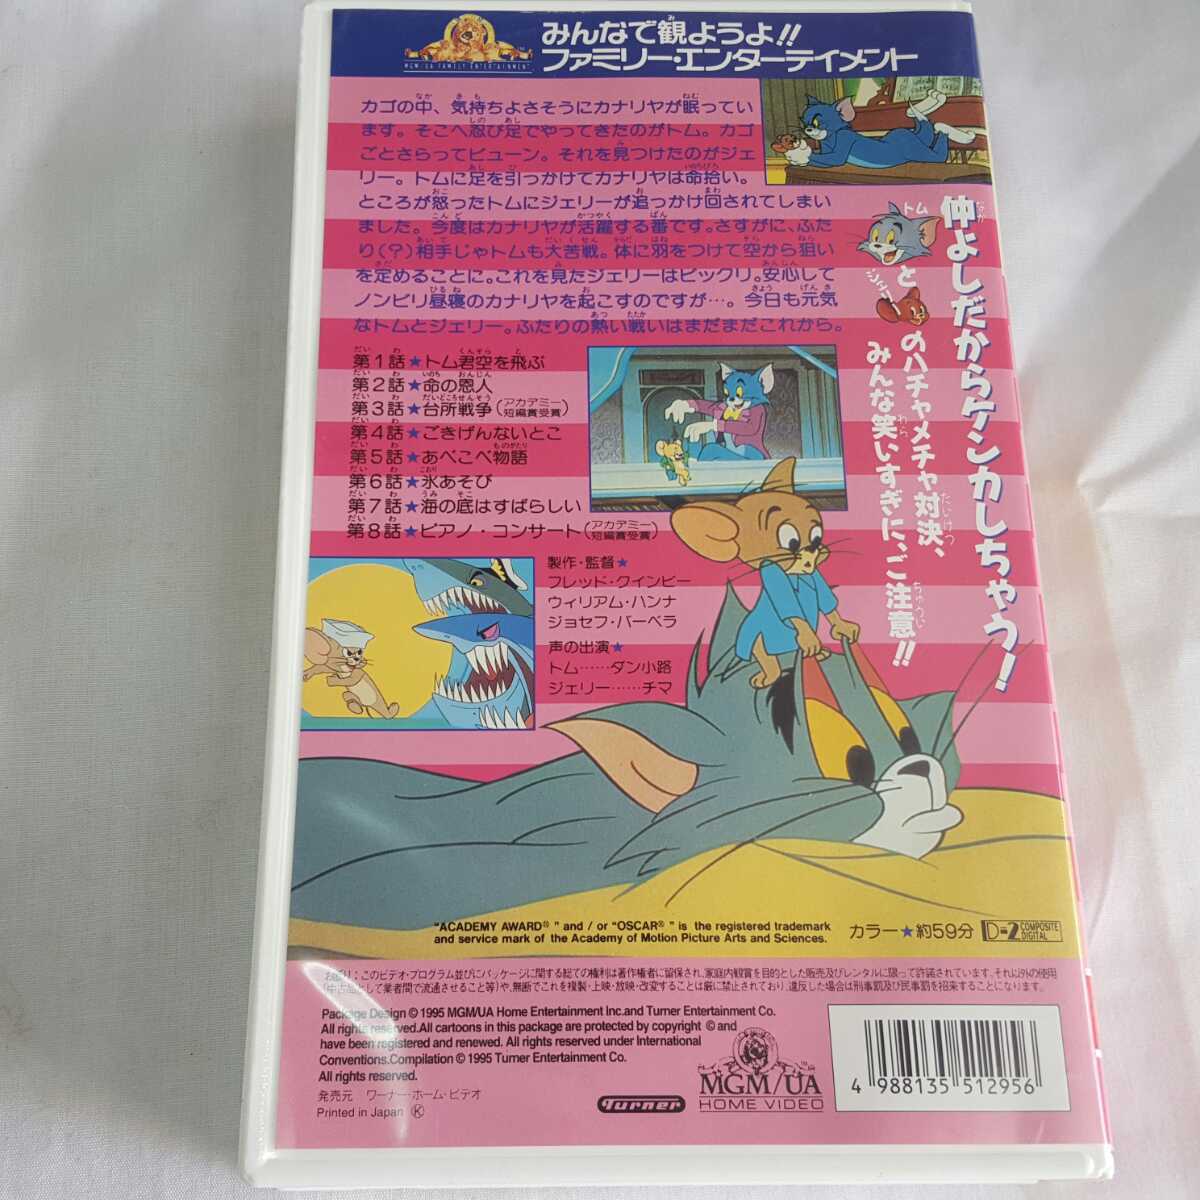 *VHS* Tom . Jerry ④* японский язык дуть . изменение ** без осмотра Junk **